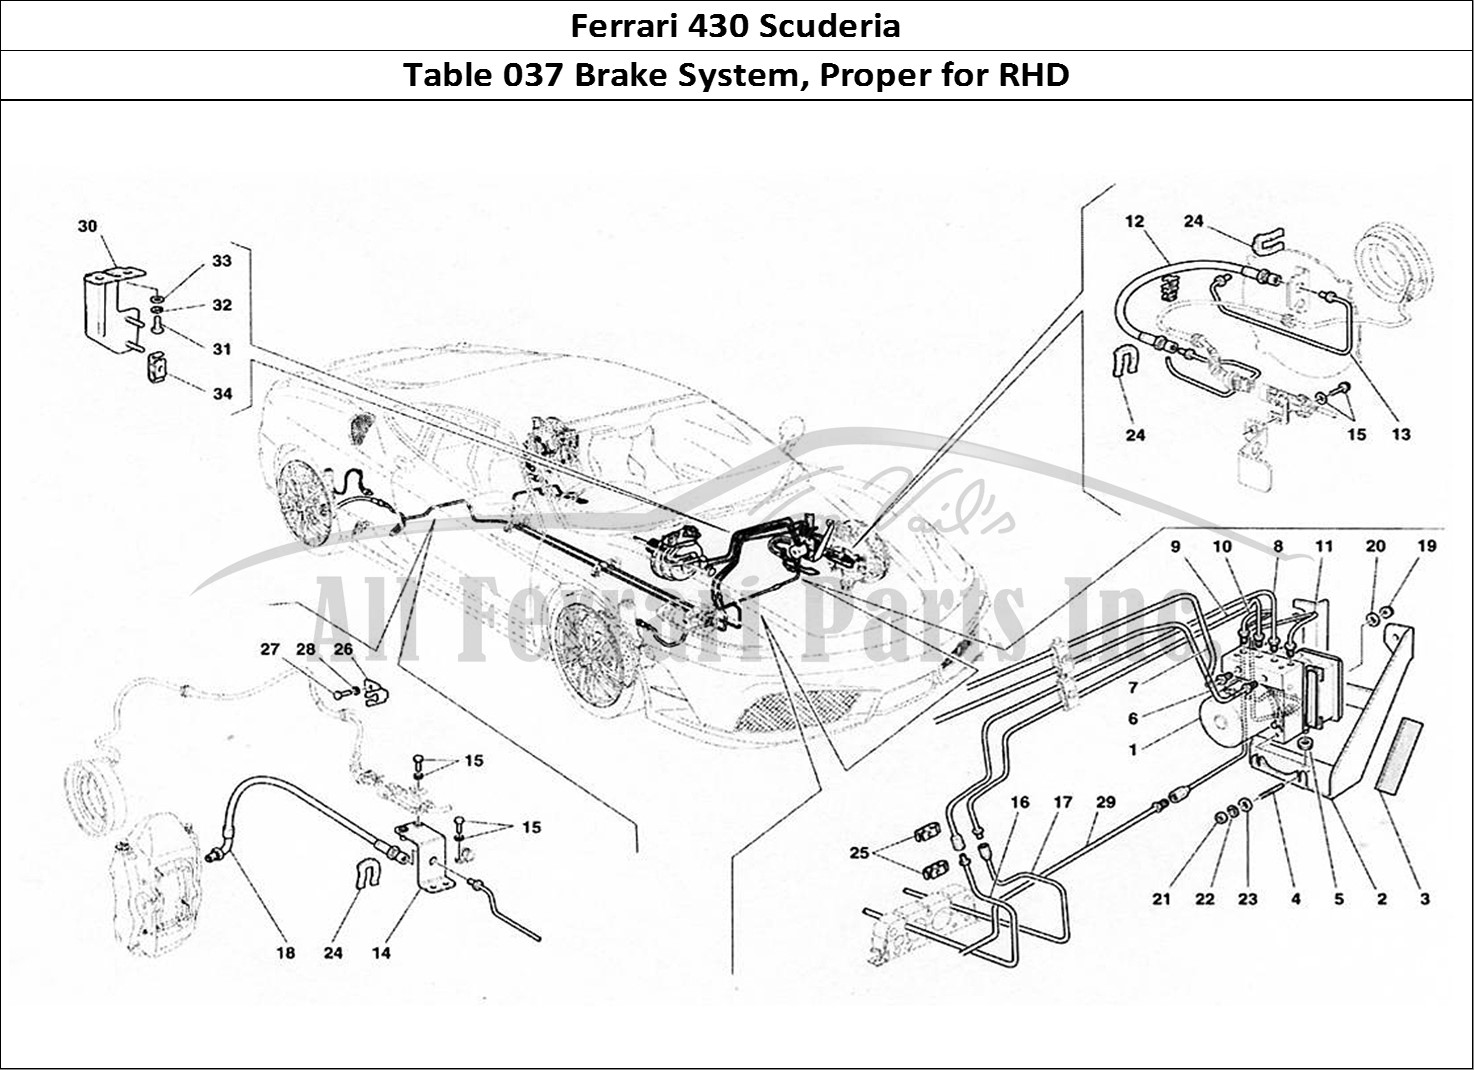 Ferrari Parts Ferrari 430 Scuderia Page 037 Brake System - Valid for